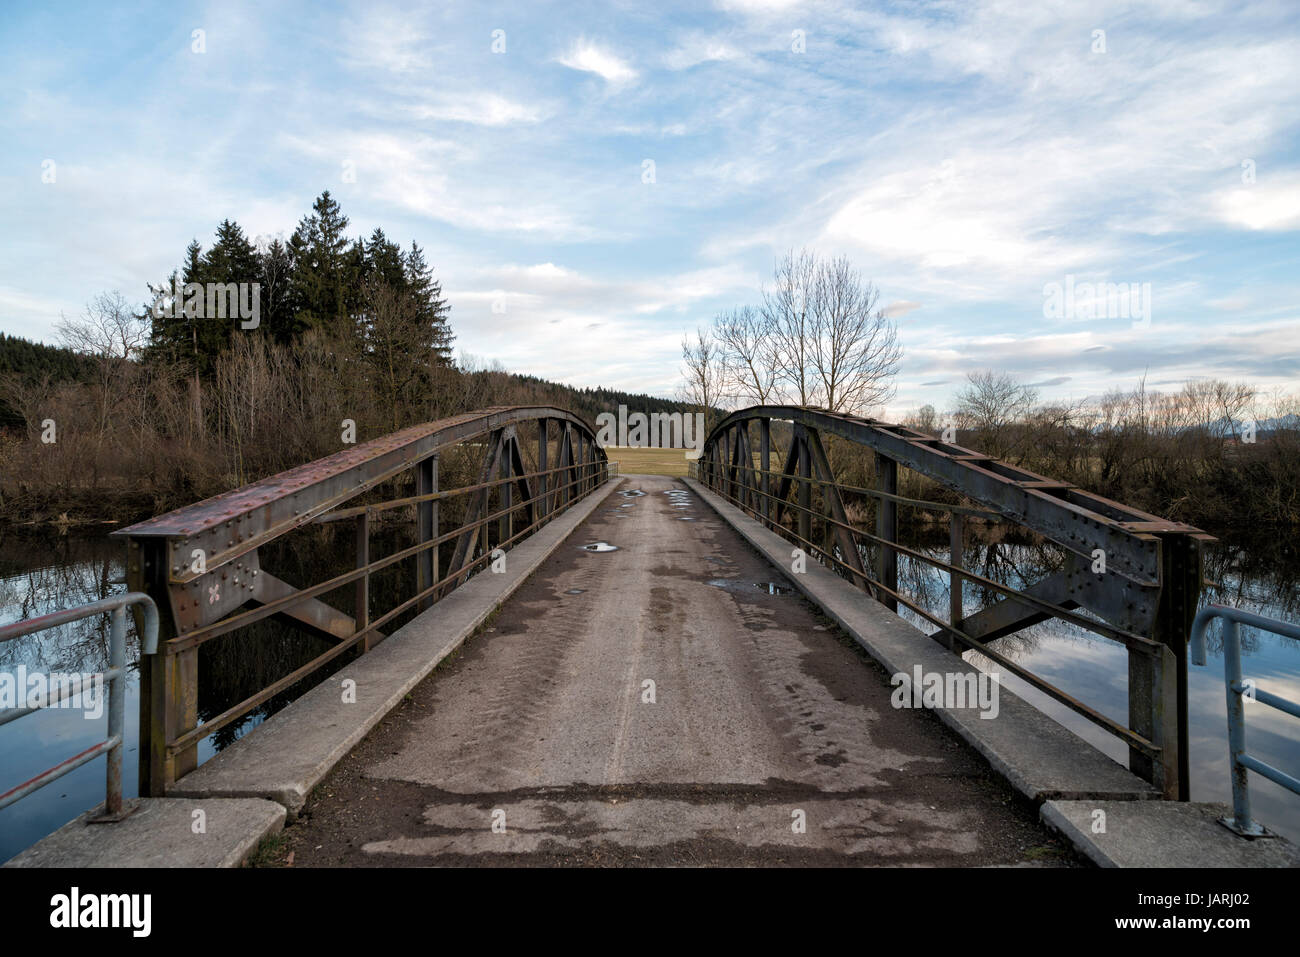 Brücke über die Wertach am Heubrückenweg beim Bachtelsee, Biessenhofen, Bayern, Deutschland. Bridge near Bissenhofen, Bavaria, Germany. Stock Photo